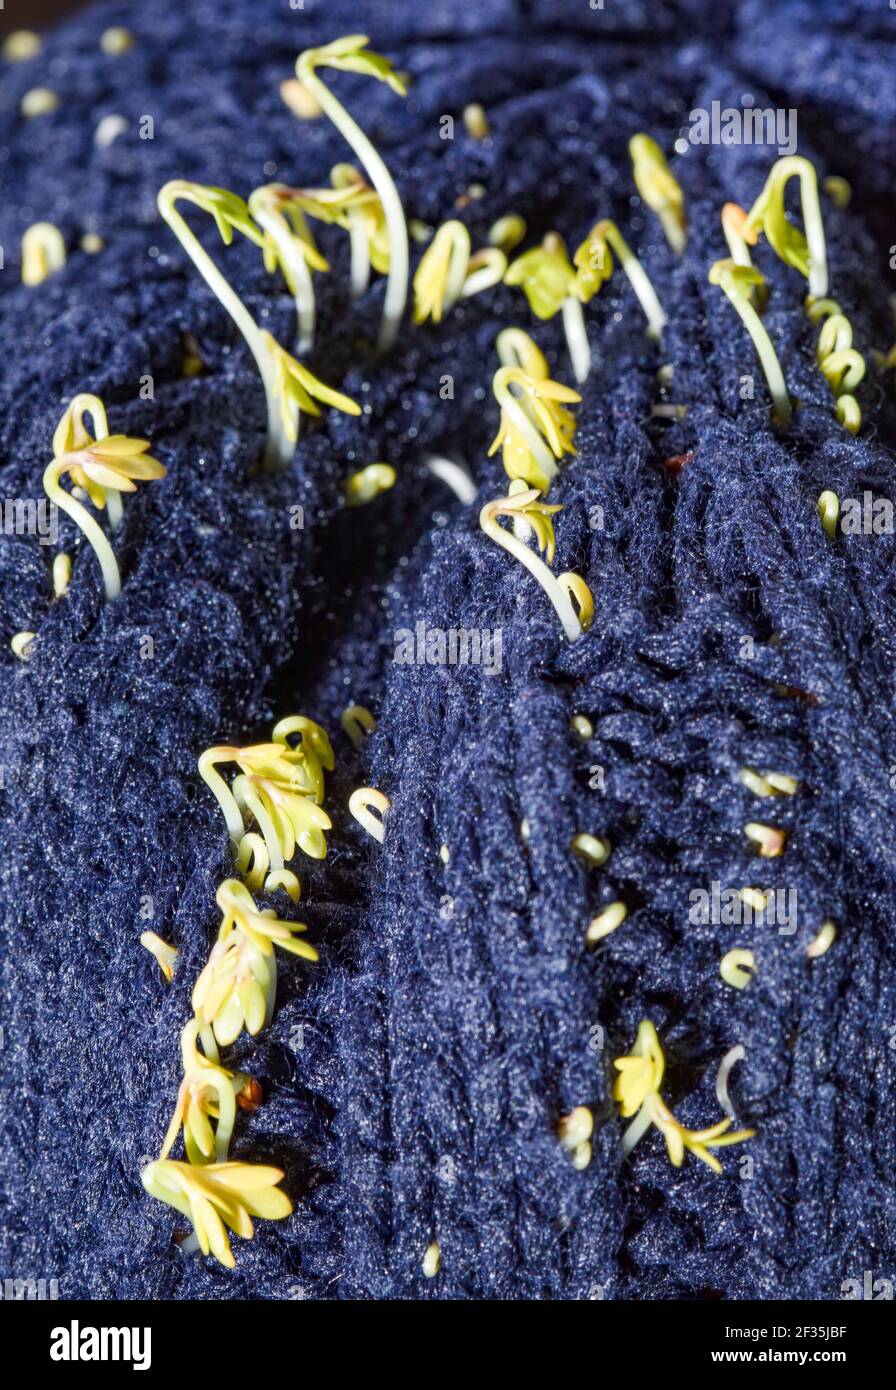 Kresse schießt, Sprossen stochen durch das Wollgewebe einer marineblauen Mütze. Vorbereitungen für Ostern. Stockfoto